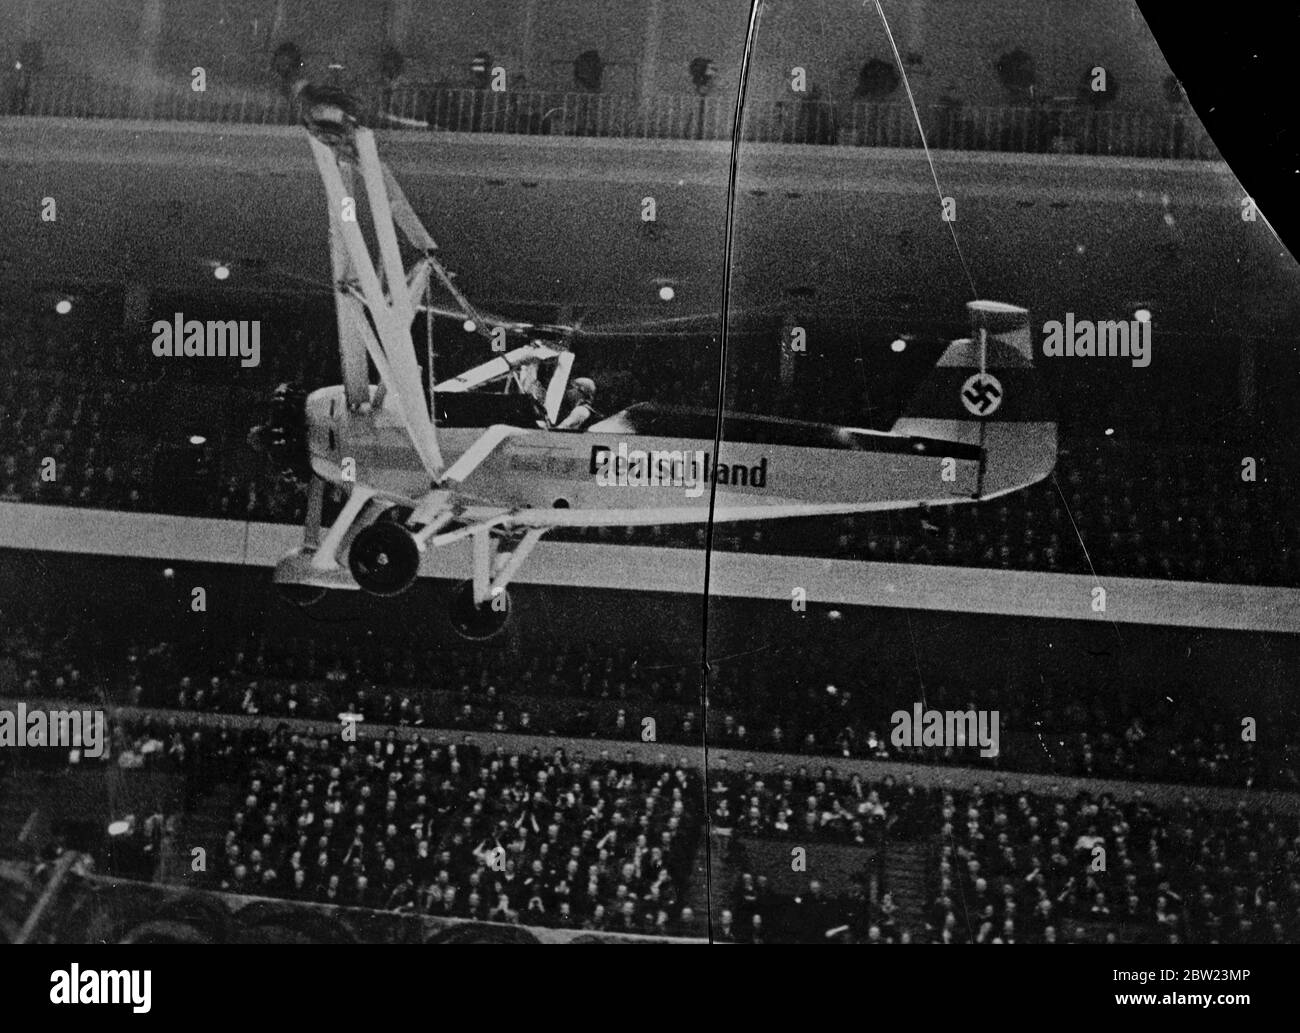 Femme fait l'histoire de l'avion est le premier vol intérieur au monde. Hanna Reitsch, la femme aérienne allemande, a fait l'histoire aéronautique lorsqu'elle a accompli le premier vol intérieur surveillé par 10,000 personnes dans l'Allemagne Halle, Berlin. En utilisant un Focke Wulf autogyro, Frauléin Reitsch a décollé, a volé en haut et en bas du hall, a manoeuvré habilement, et a atterri. 22 février 1938 Banque D'Images